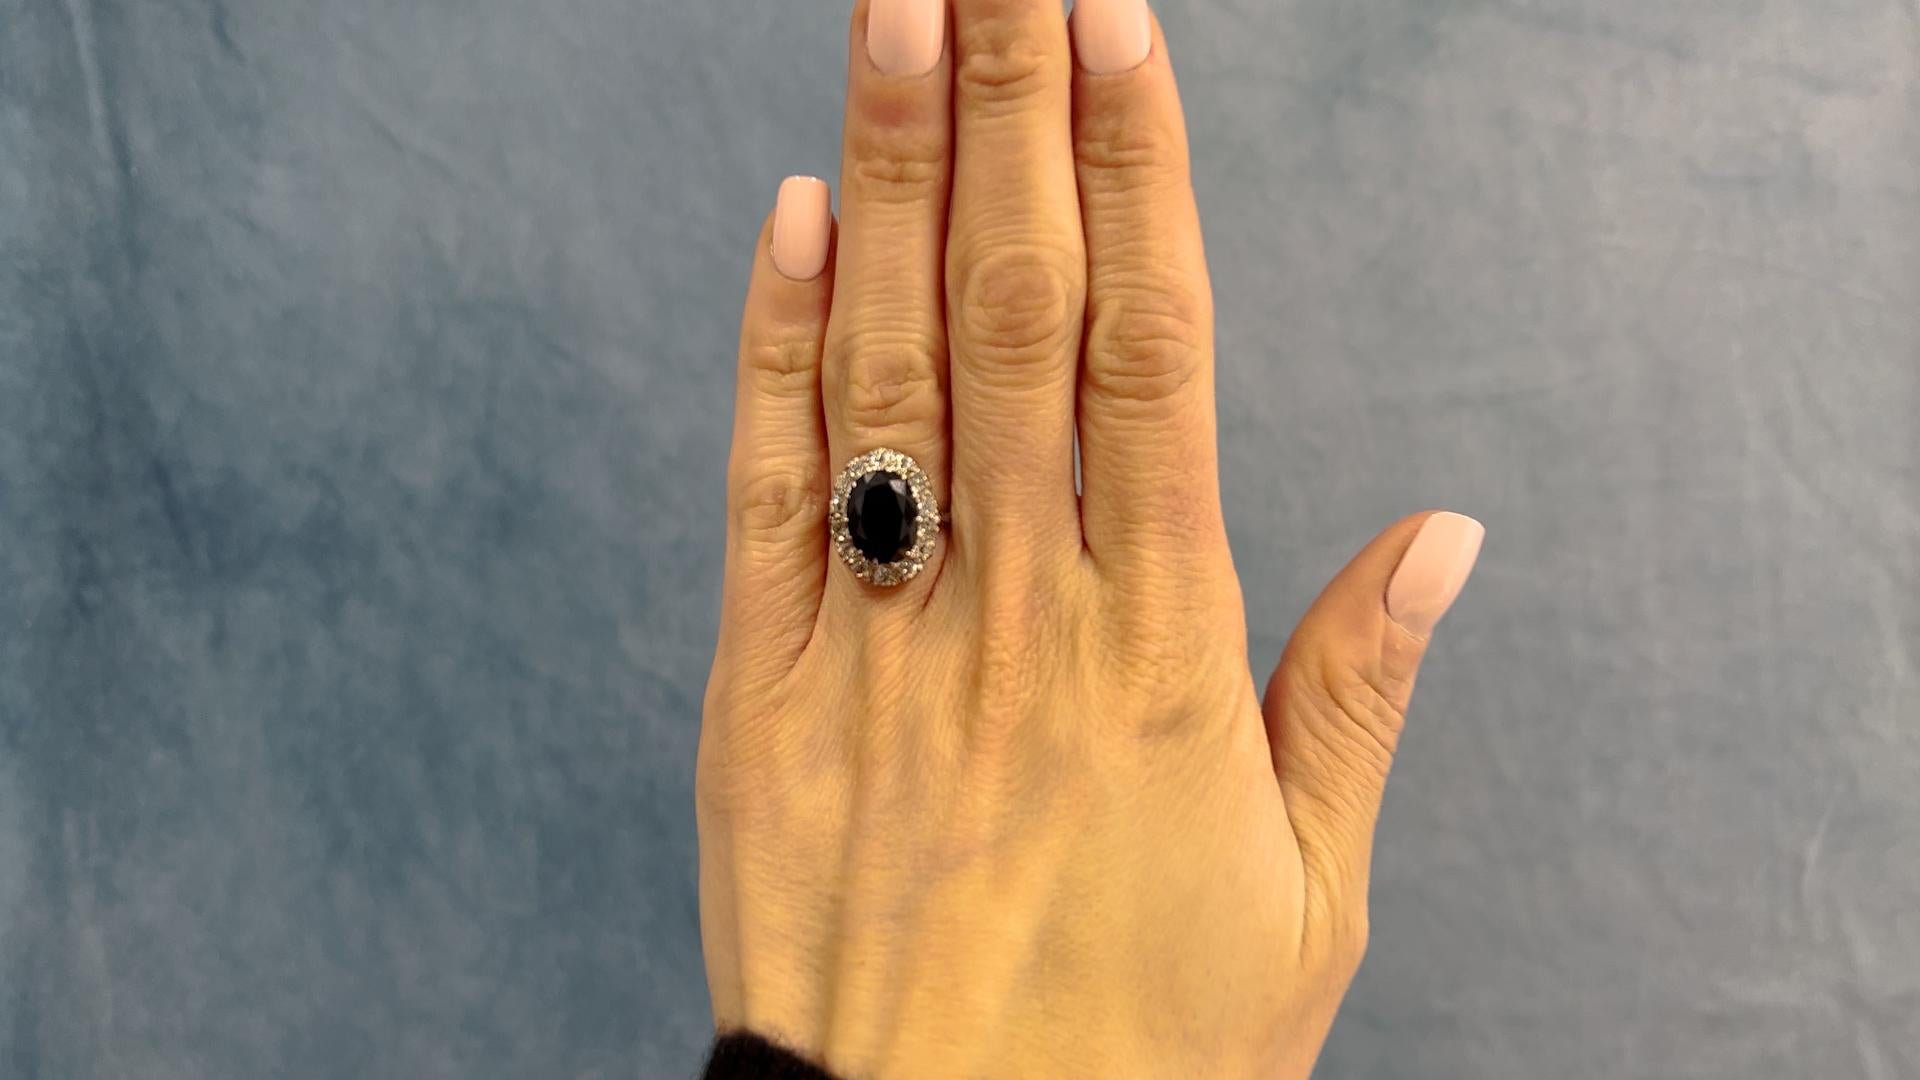 Ein Art Deco GIA Australian No Heat Saphir und Diamant 14k Weißgold Cluster Ring. Mit einem ovalen dunkelblauen Saphir im GIA-Mischschliff mit einem Gewicht von ca. 4,85 Karat, begleitet von der GIA-Nummer 5231130157, die besagt, dass der Saphir